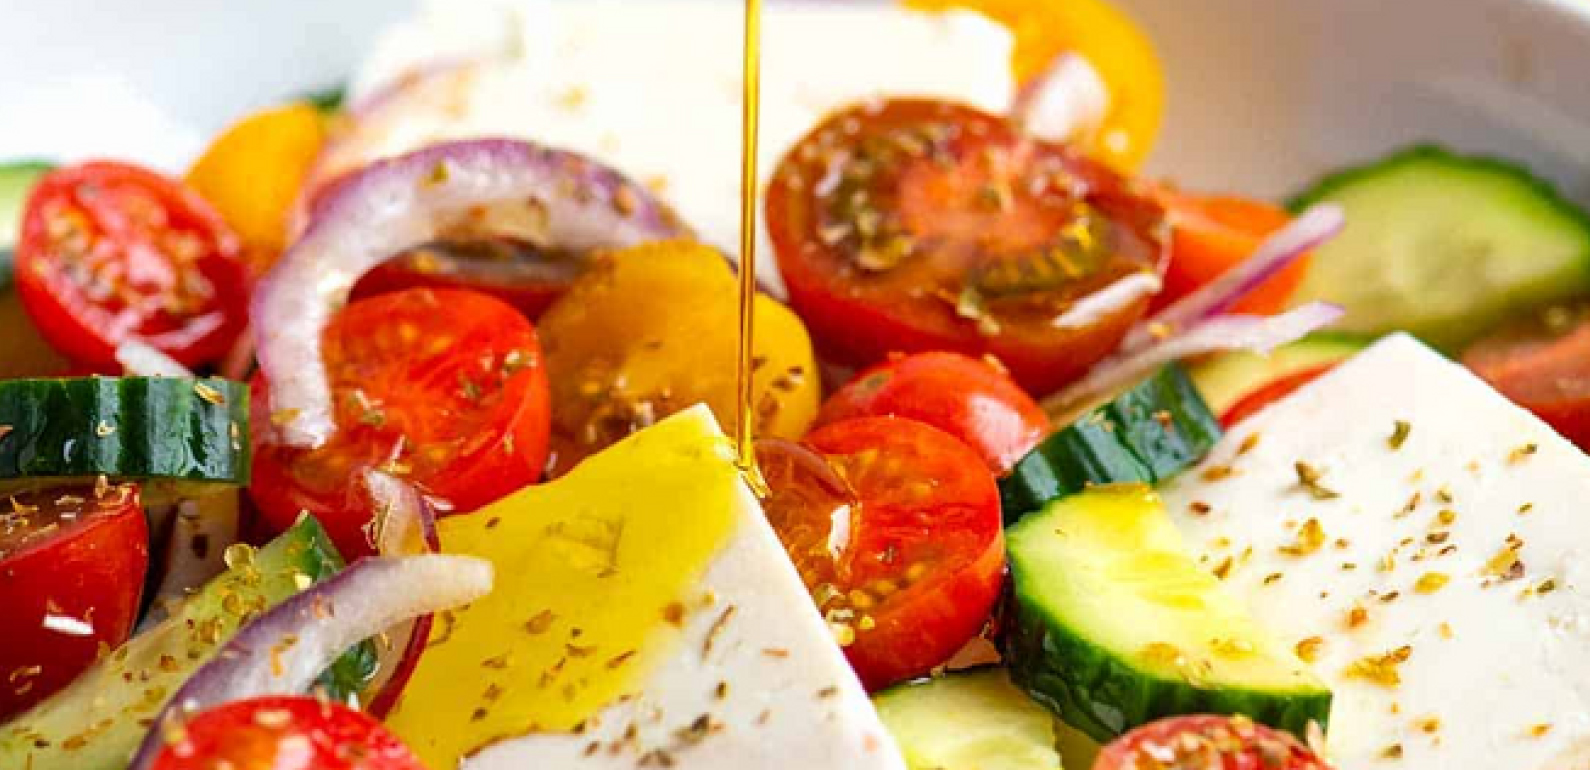 سلطة يونانية: وصفات طعام يونانية - وصفات كريتية بزيت الزيتون